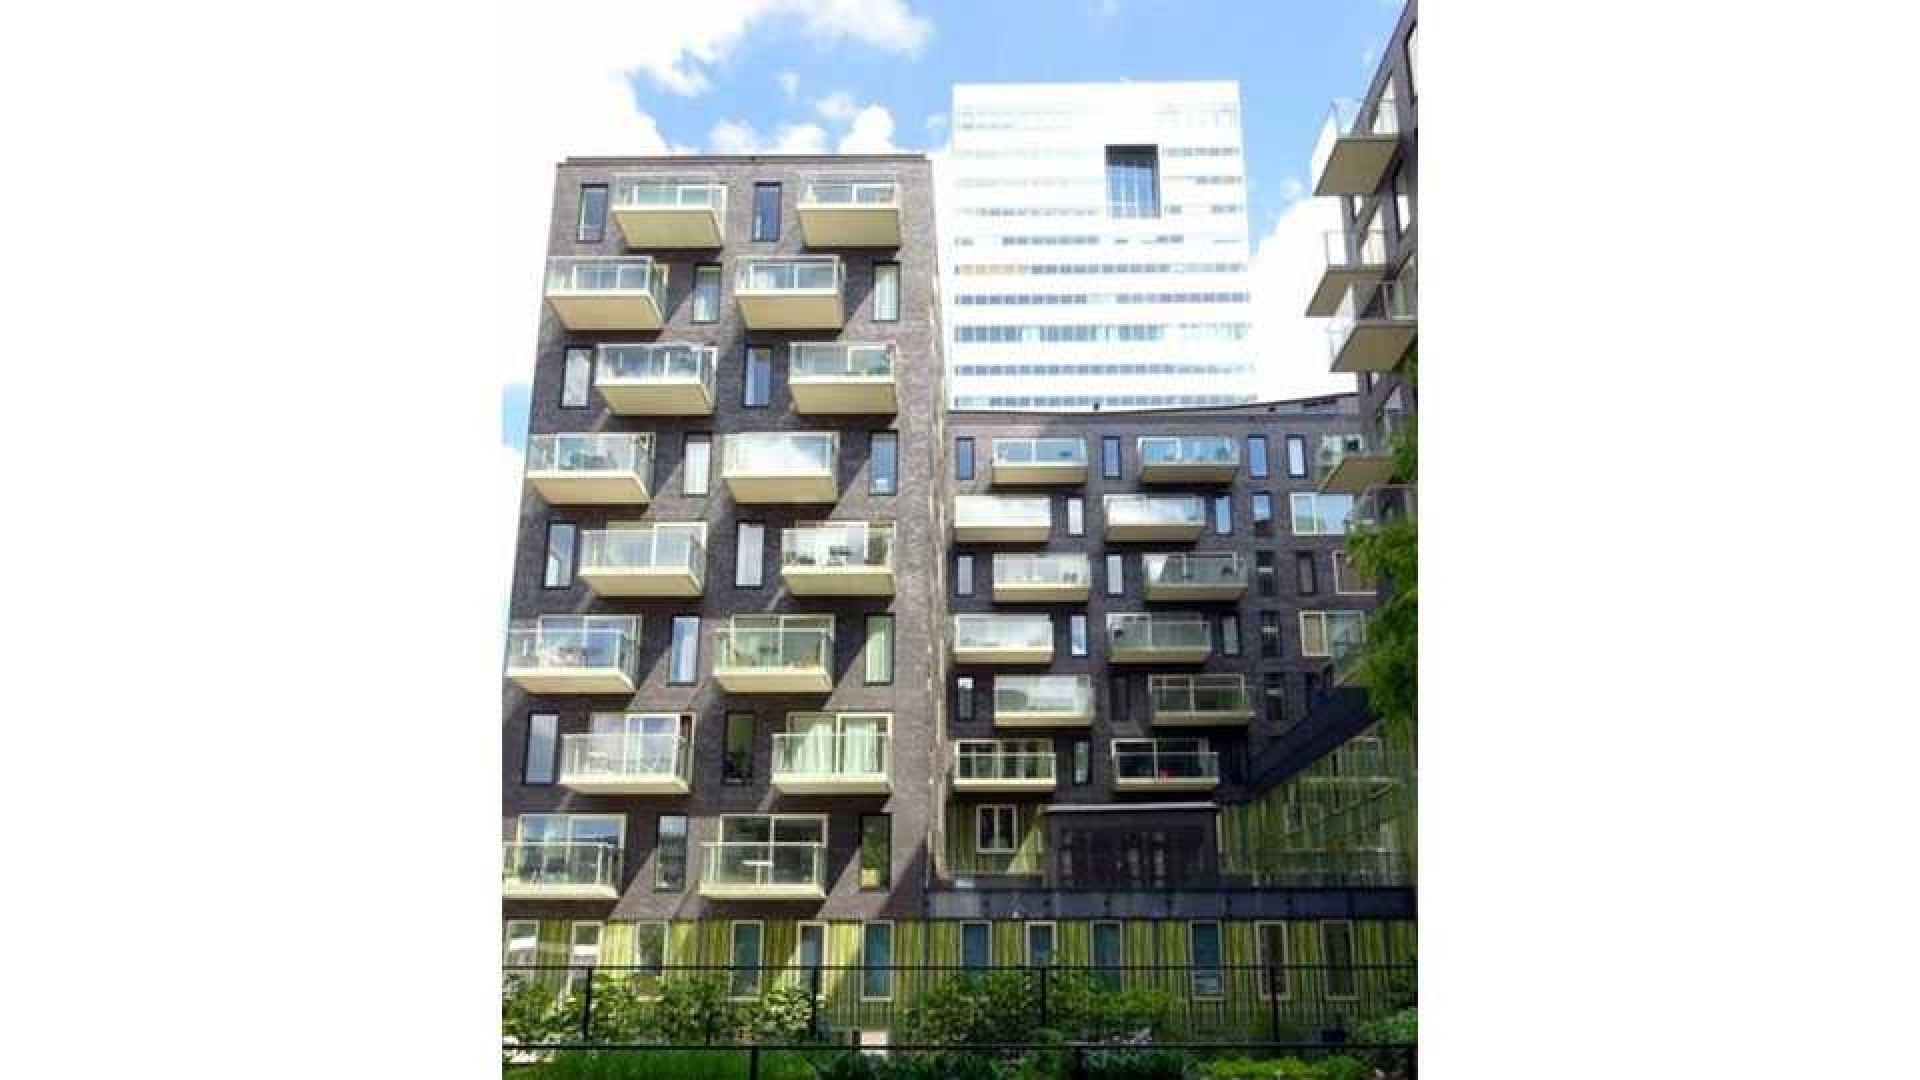 Ajax voetballer Joel Veltman huurt zeer luxe appartement aan de Zuid As in Amsterdam. Zie foto's 7